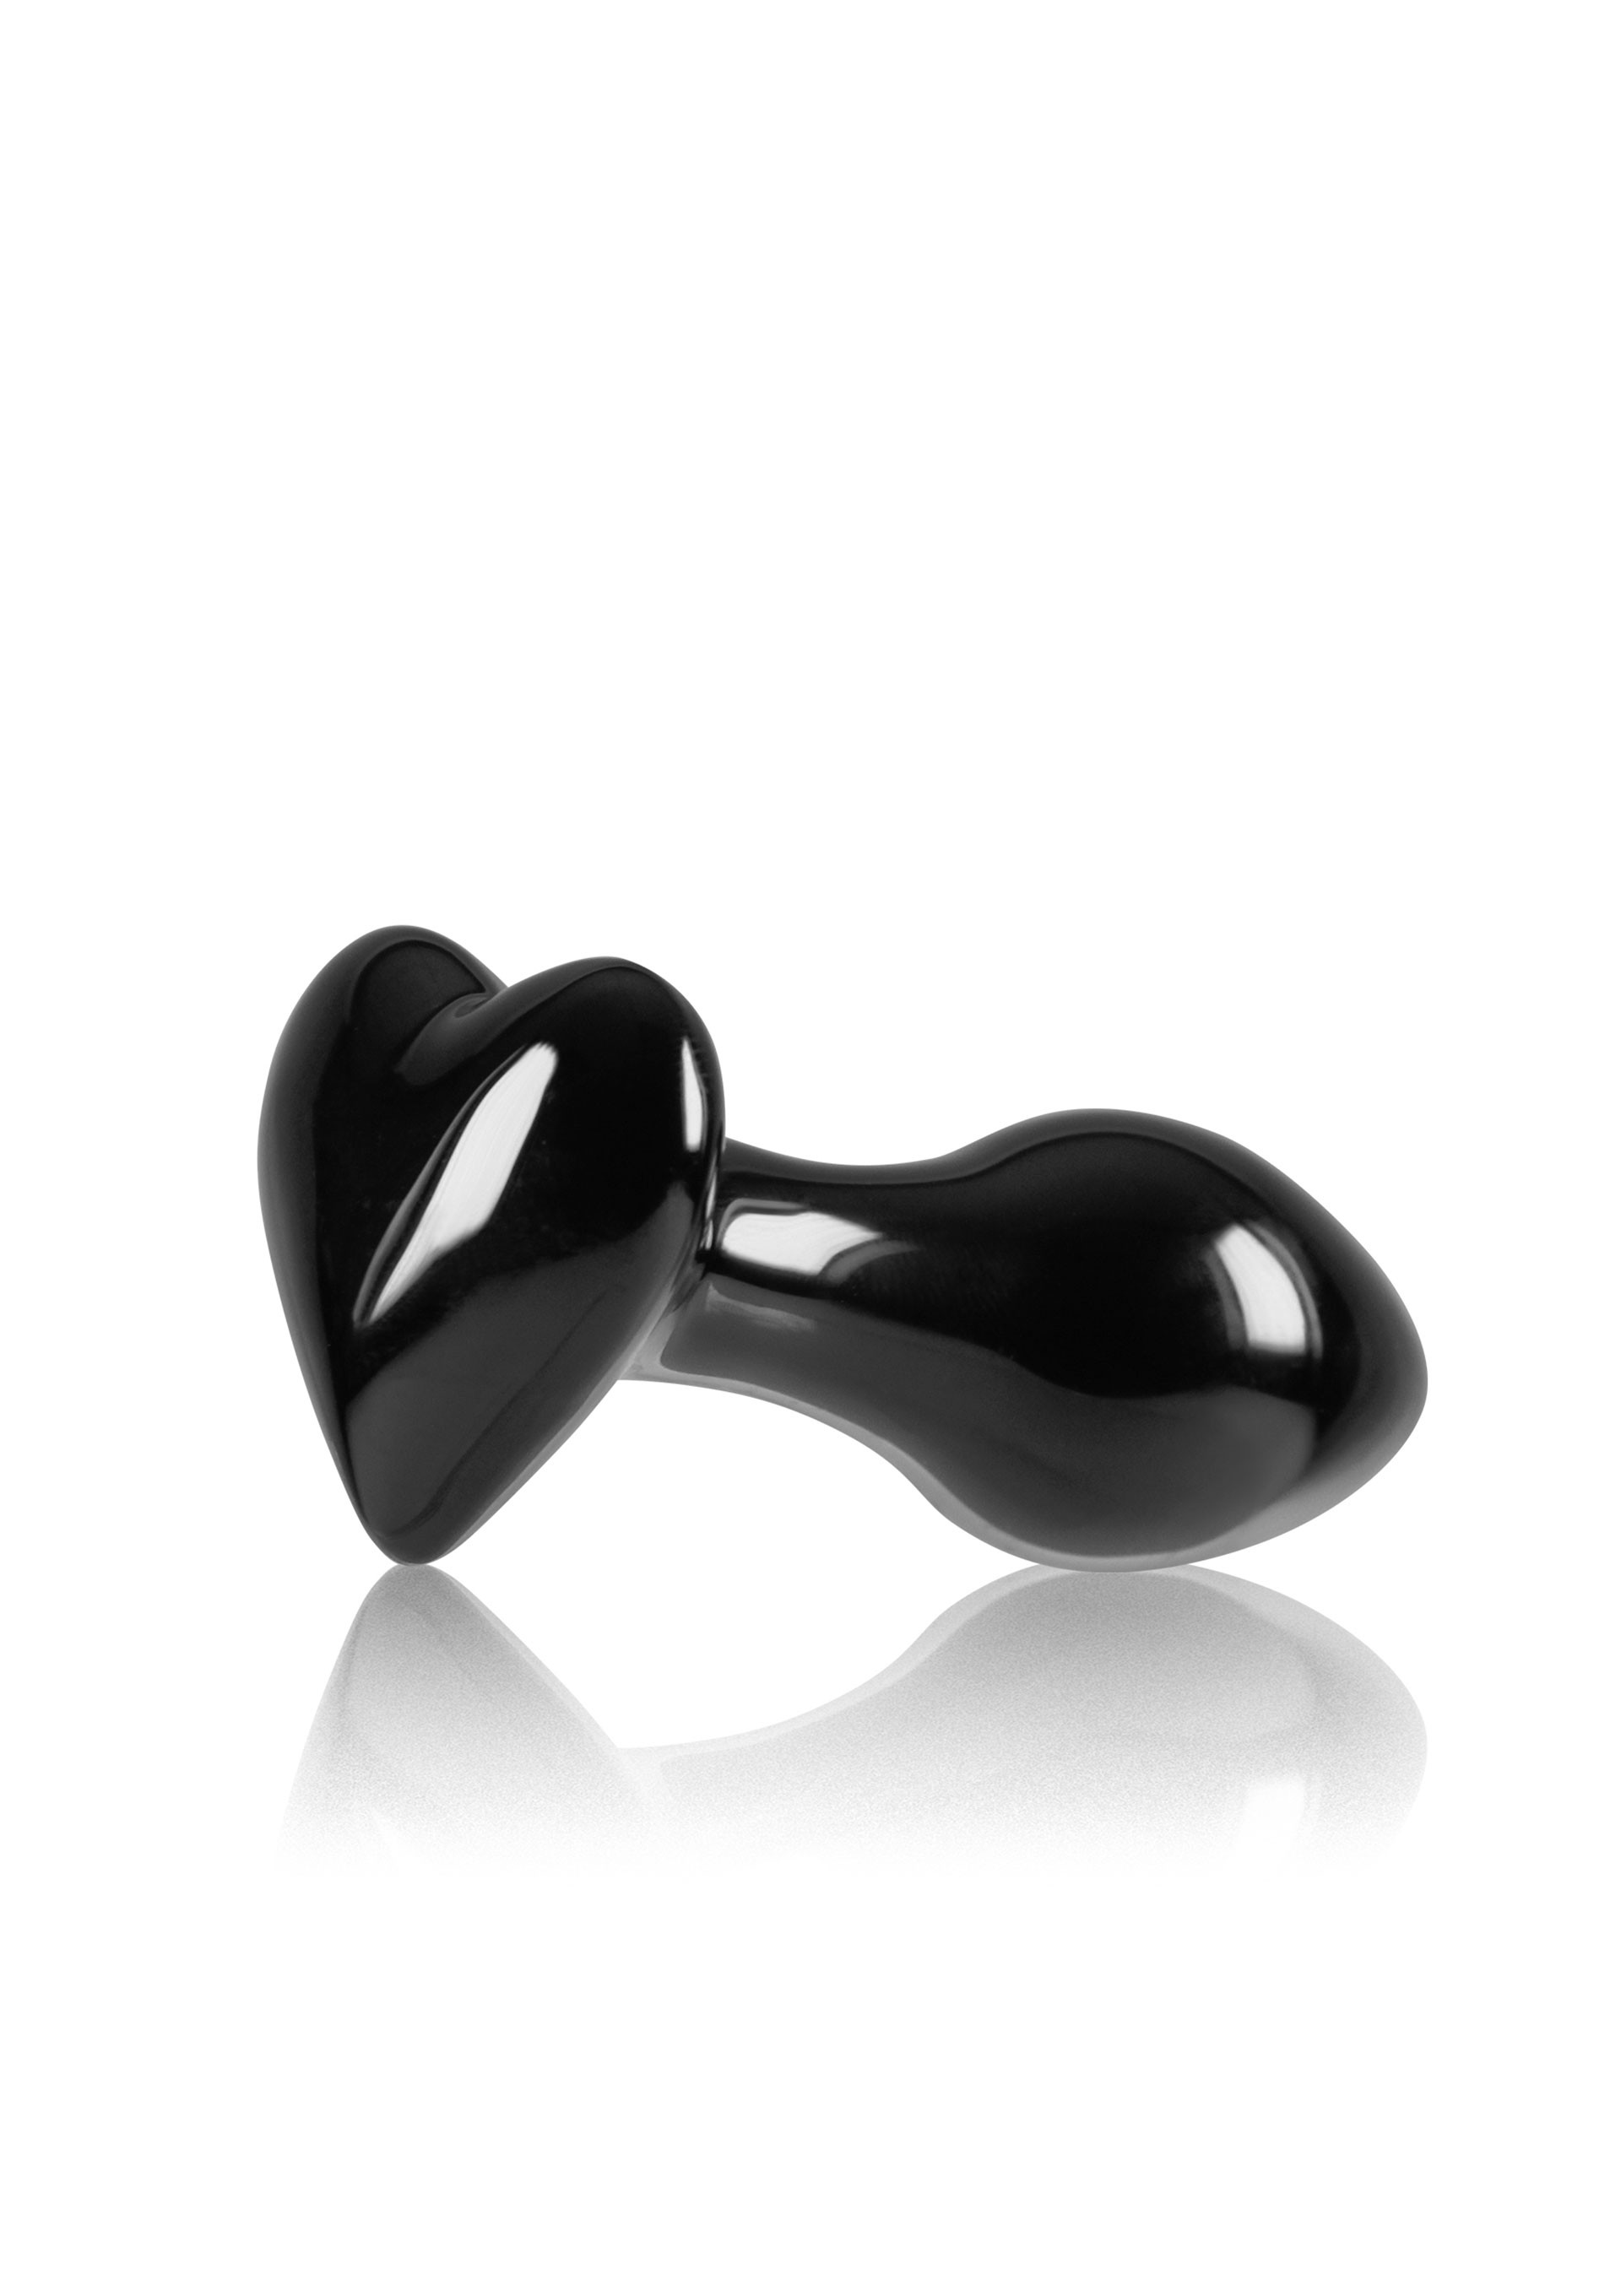 Korek analny w kształcie serduszka z czarnego szkła